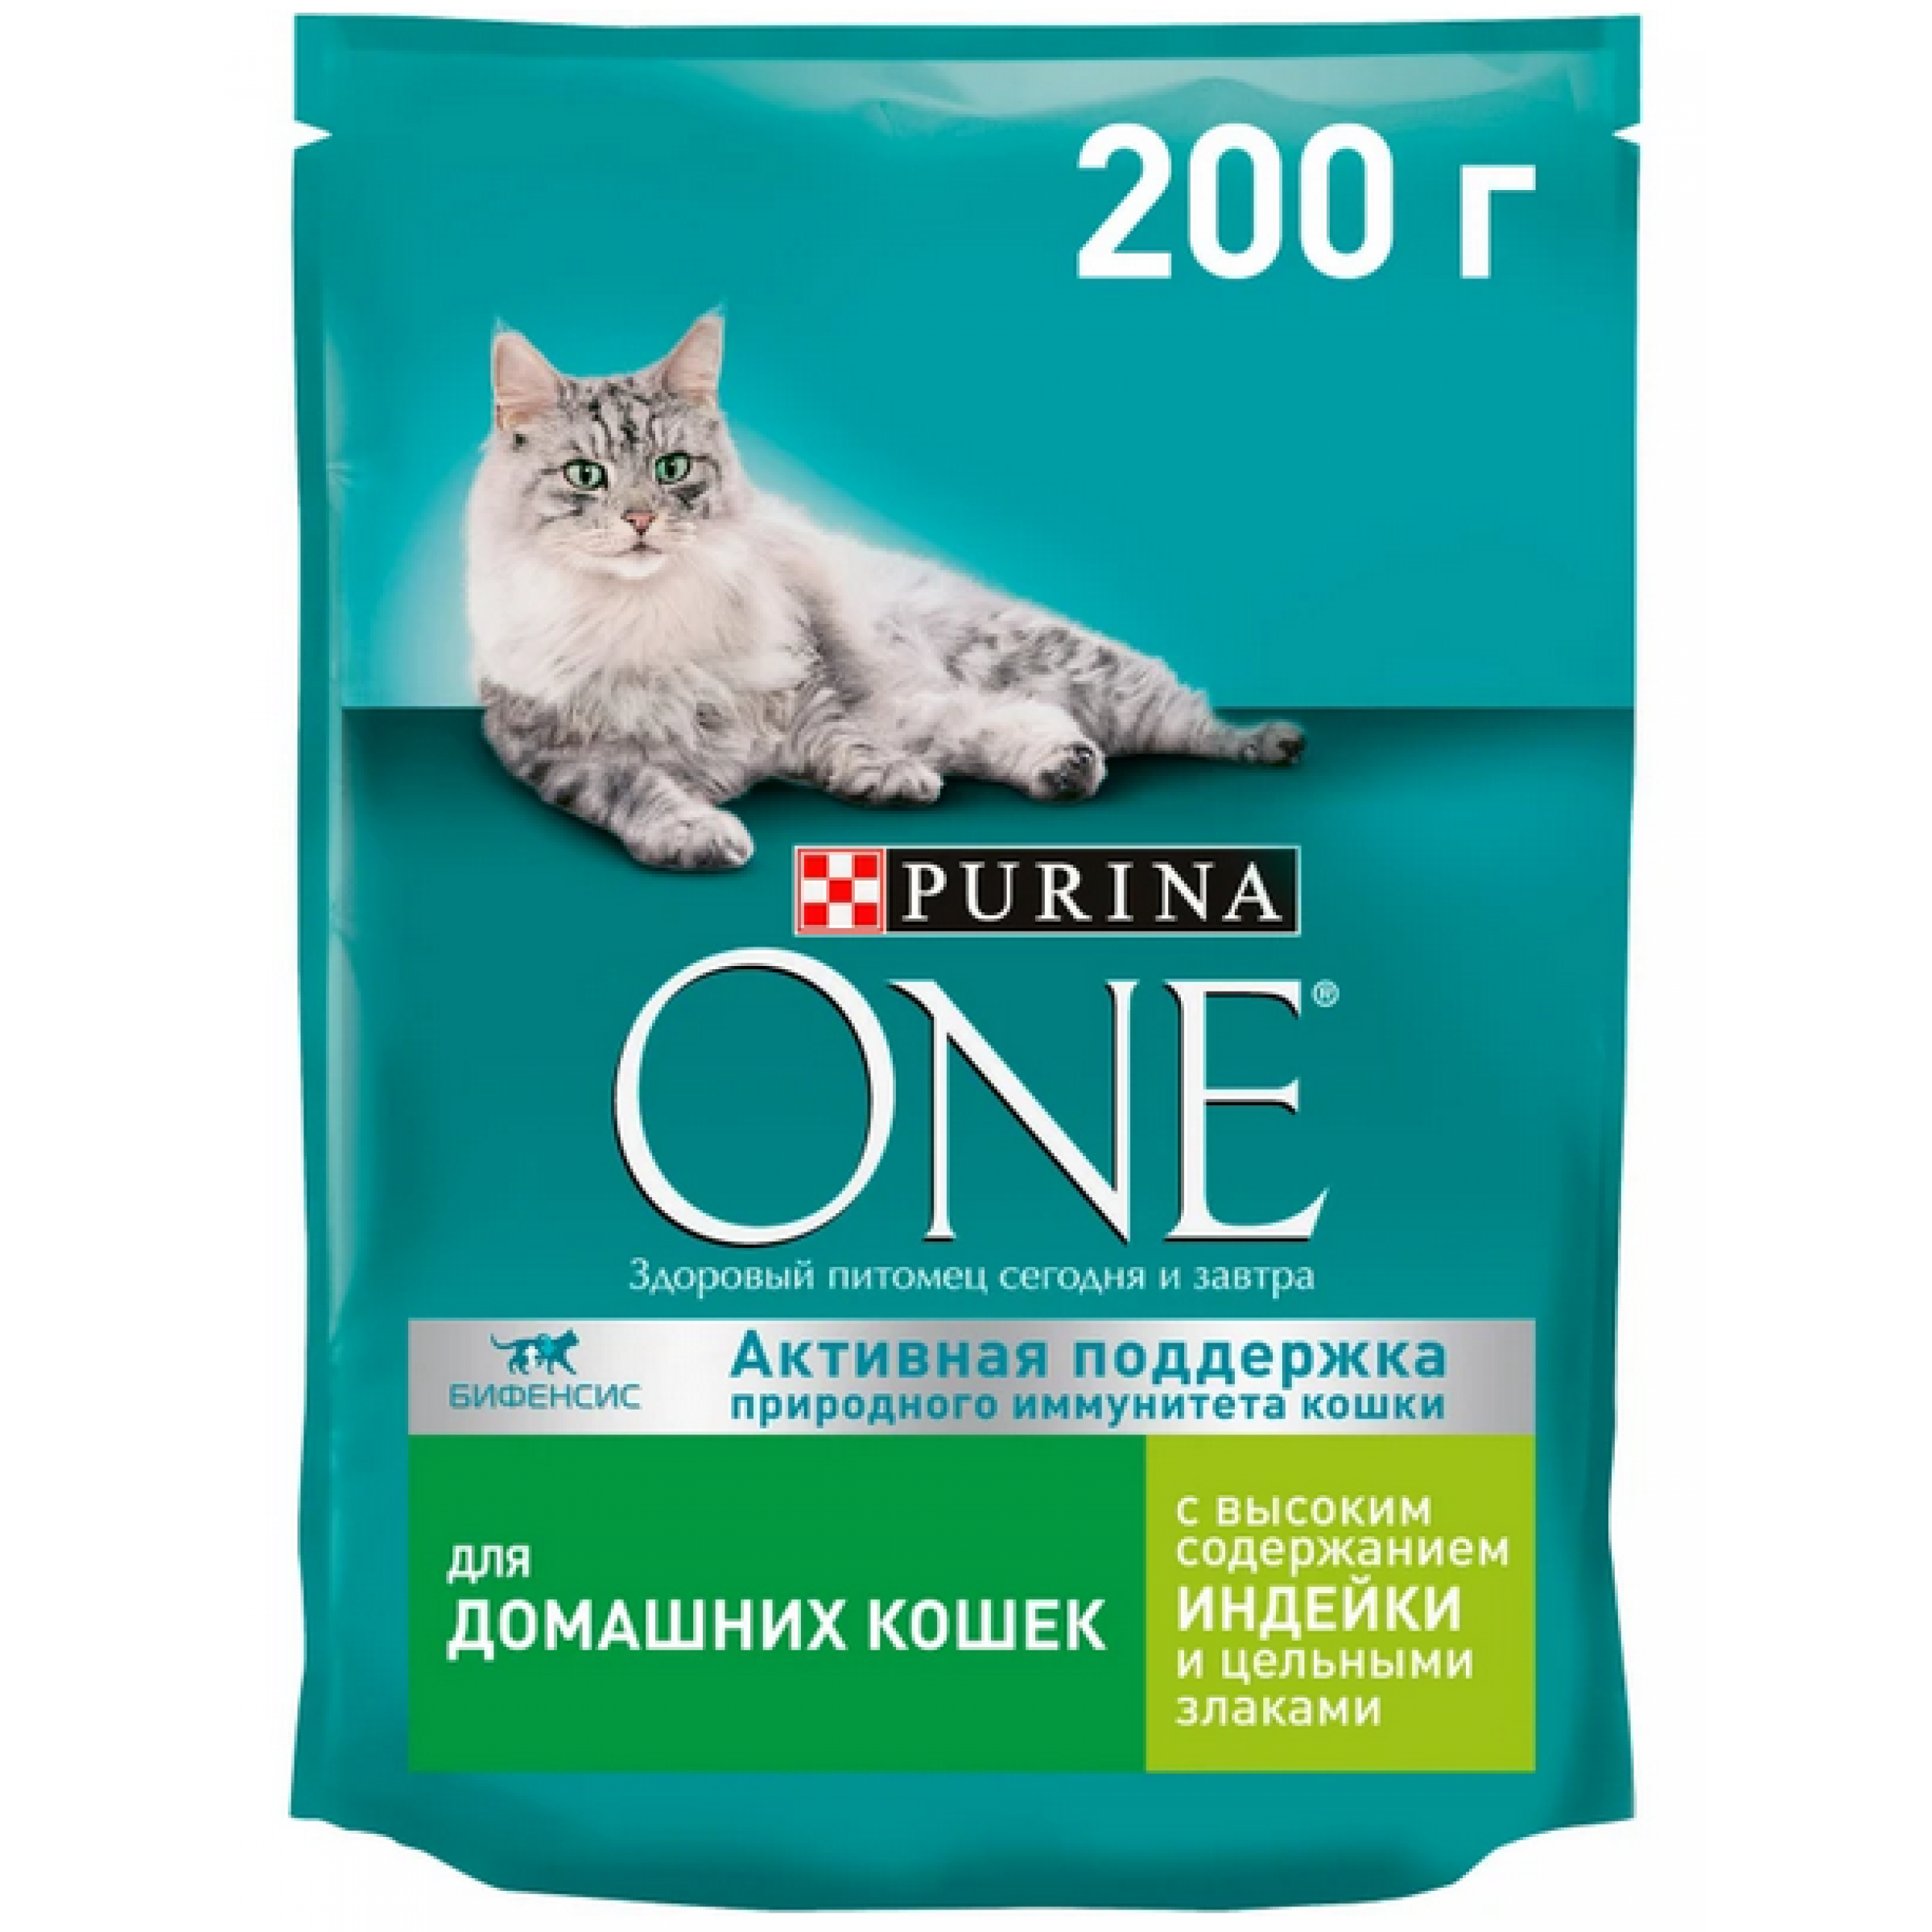 Сухой корм Purina One для кошек с индейкой и цельными злаками, 200 г